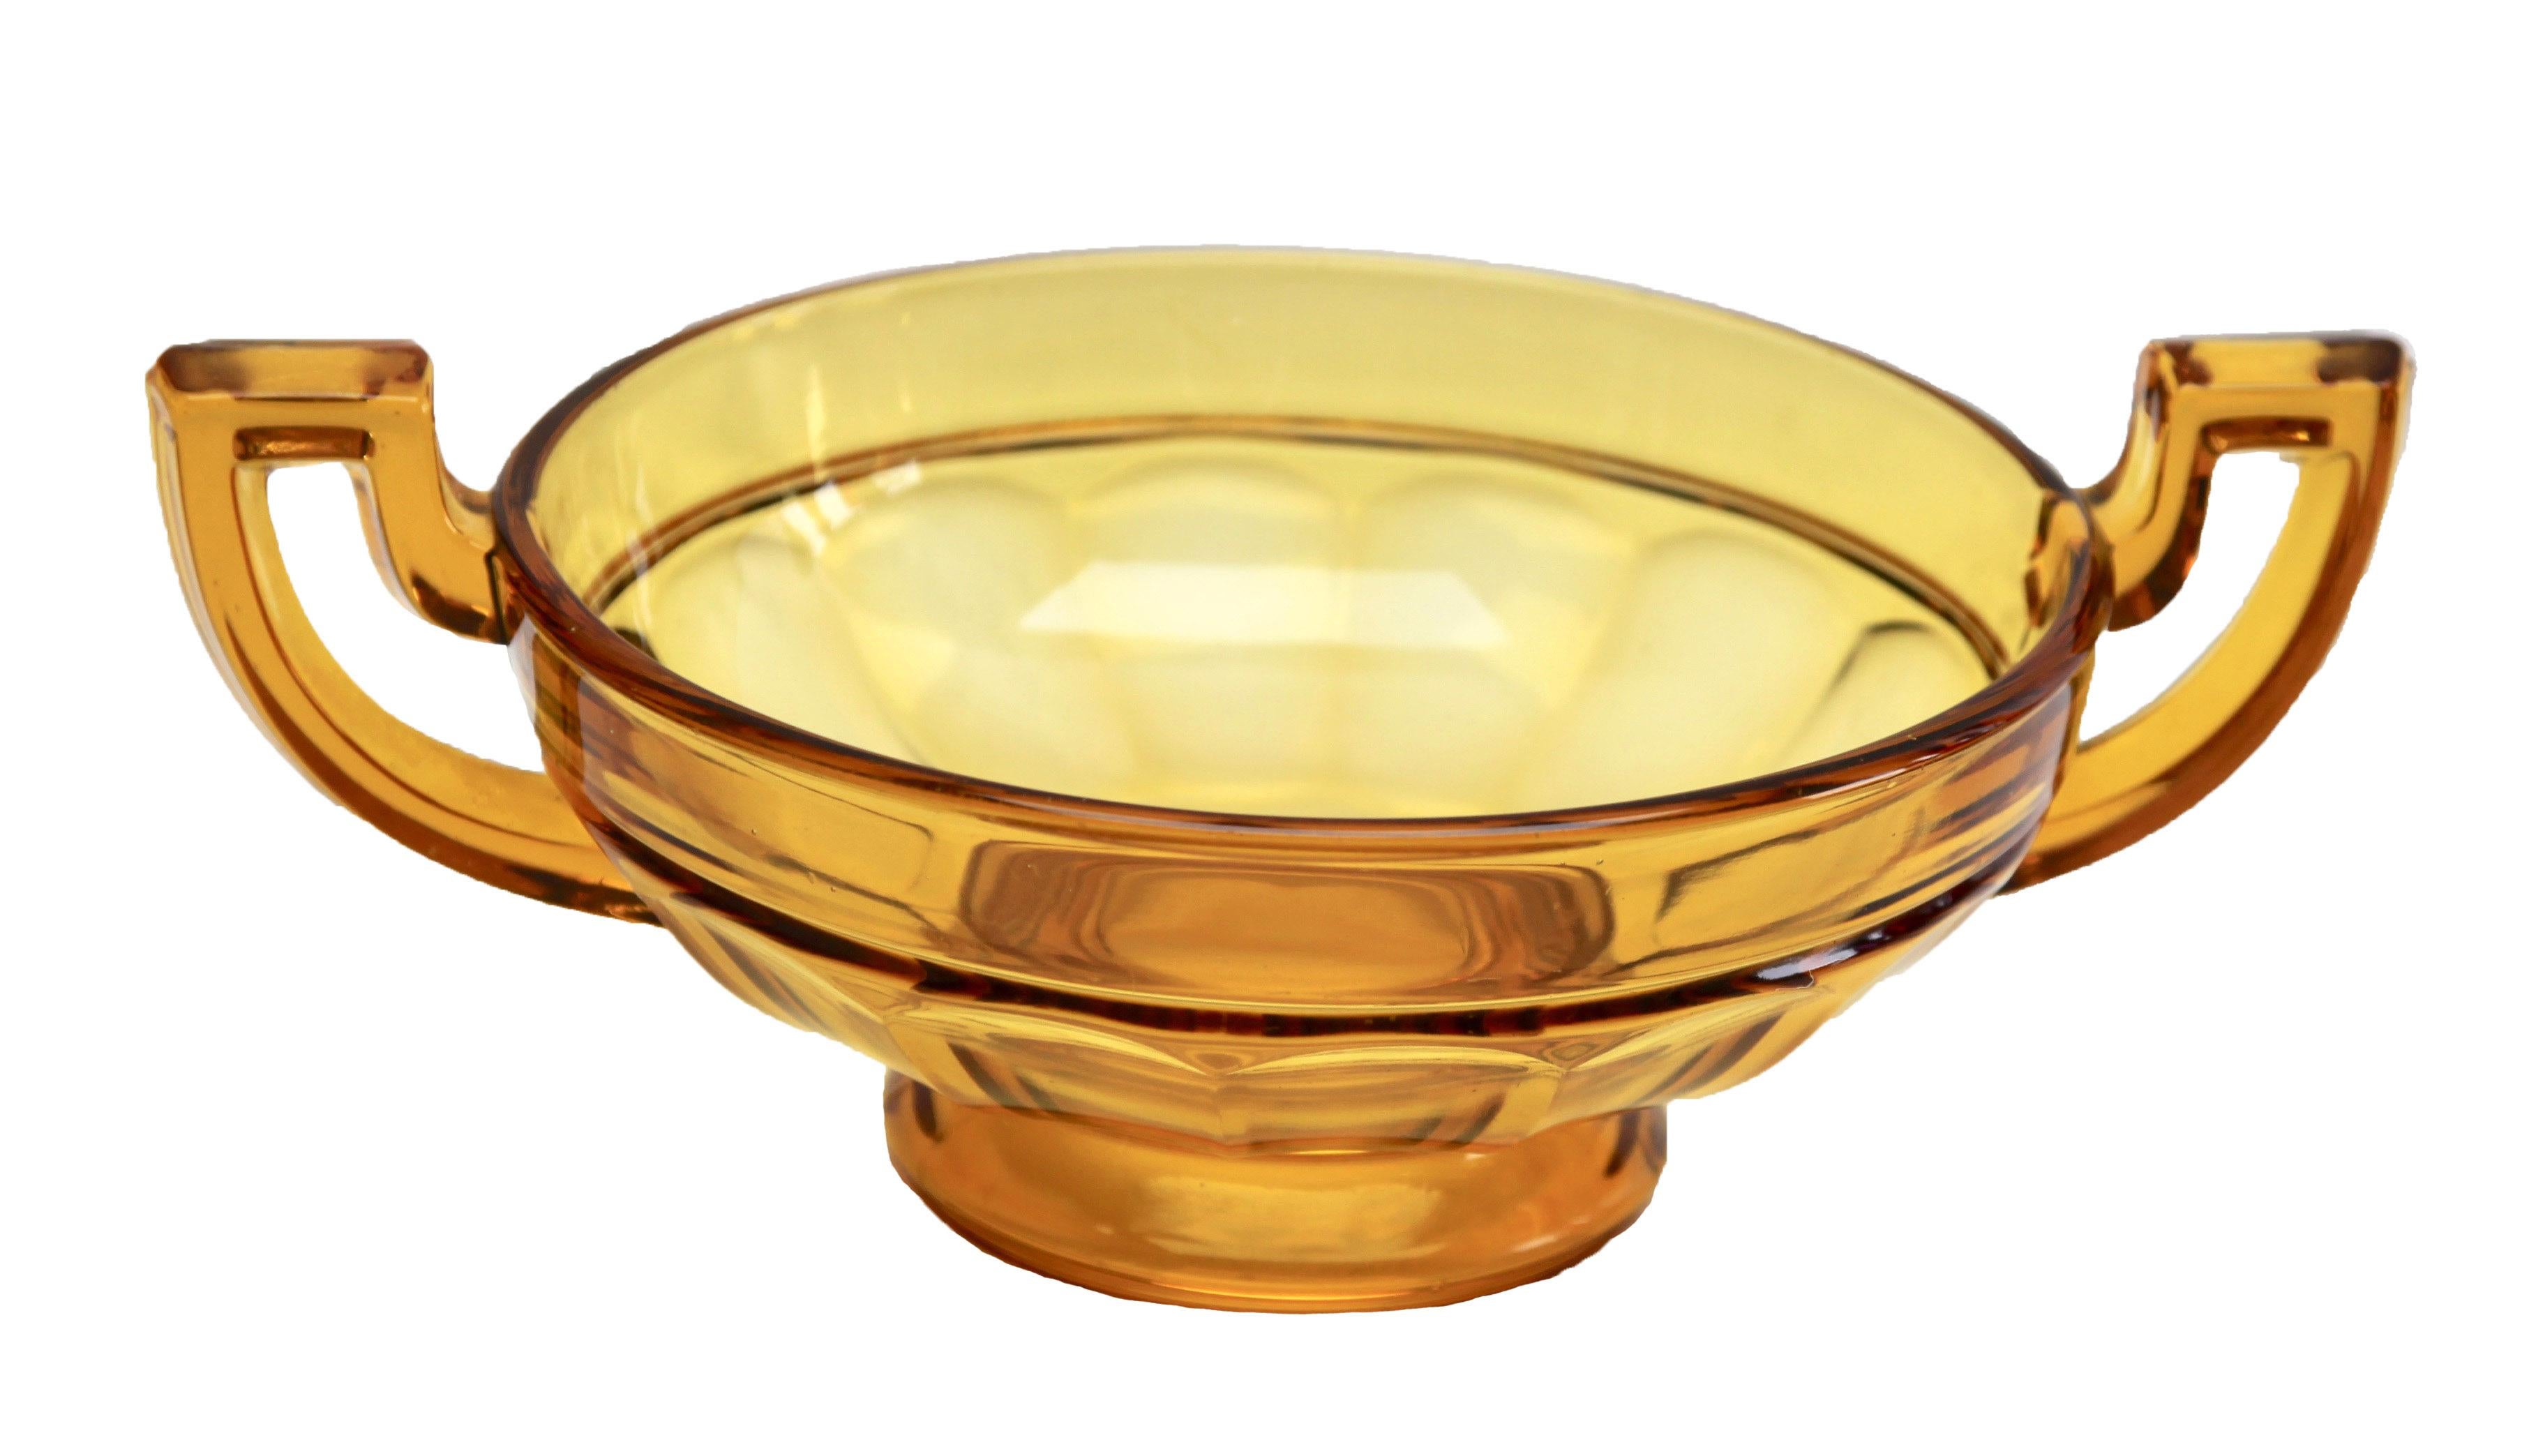 Die runde Version dieser Schale aus Glas, hergestellt von Val Saint Lambert für die Luxval-Serie. Die Vase trägt auf der Innenseite die Aufschrift: 